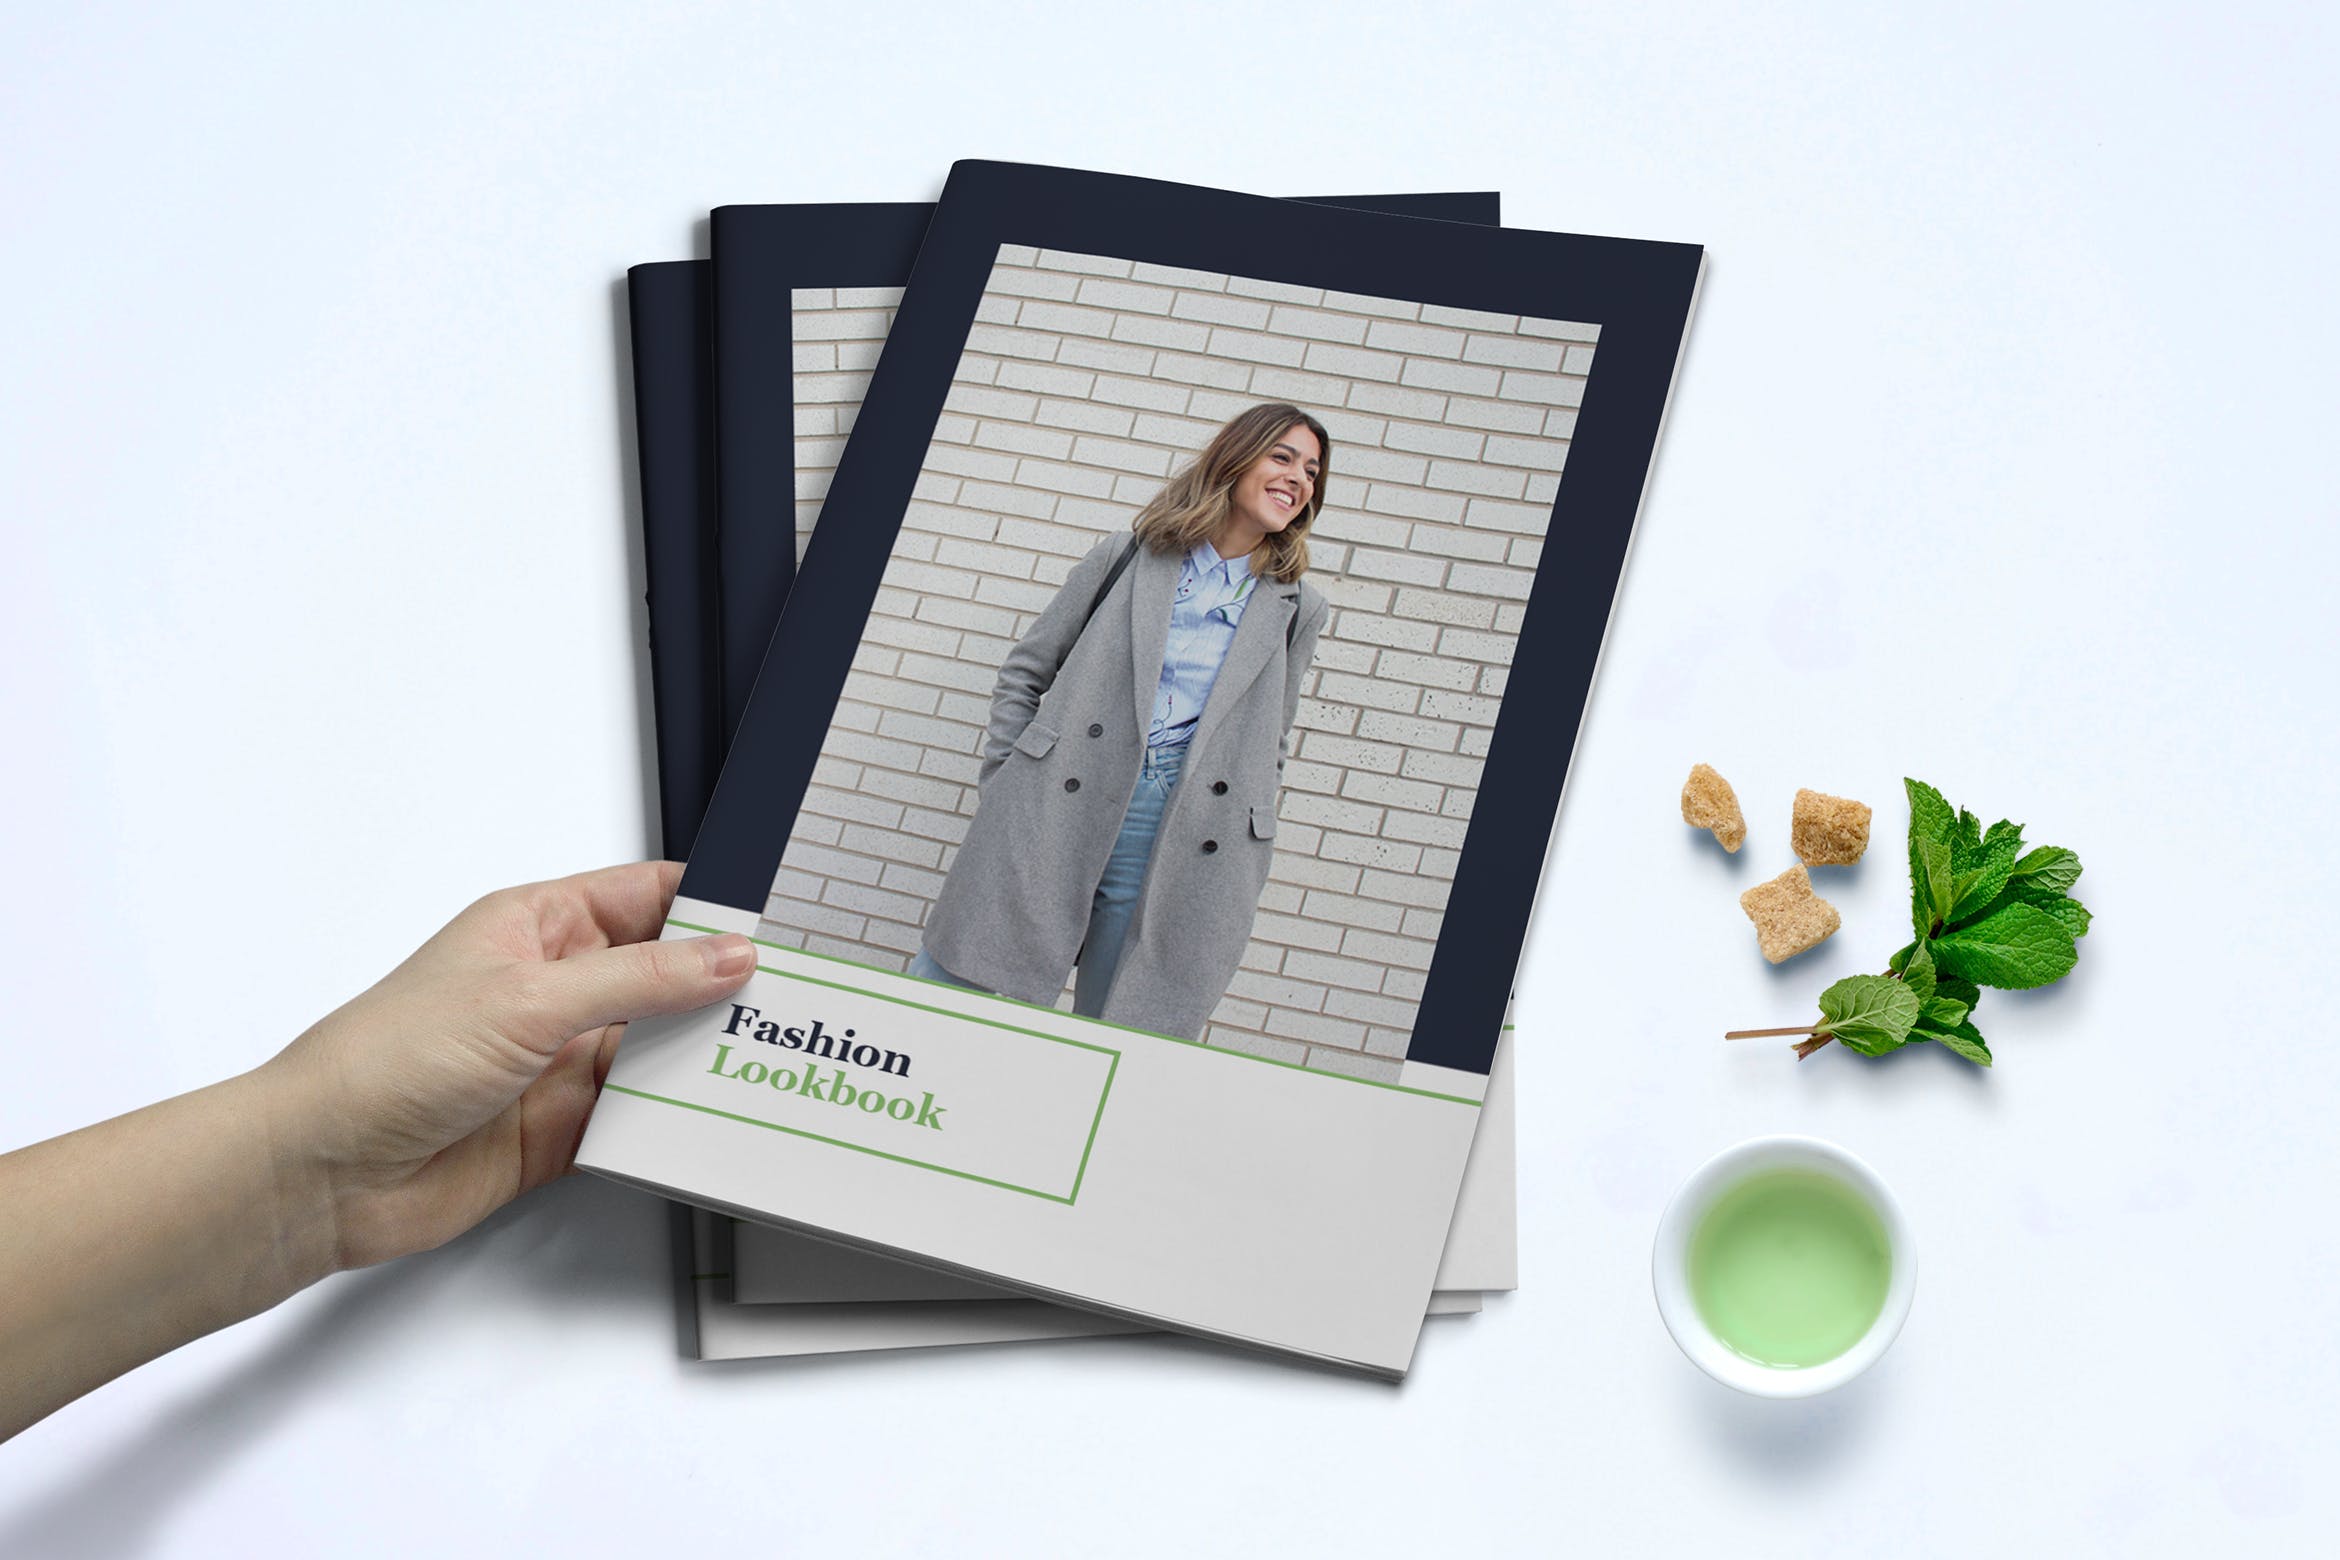 时装订货画册/新品上市产品蚂蚁素材精选目录设计模板v1 Fashion Lookbook Template插图